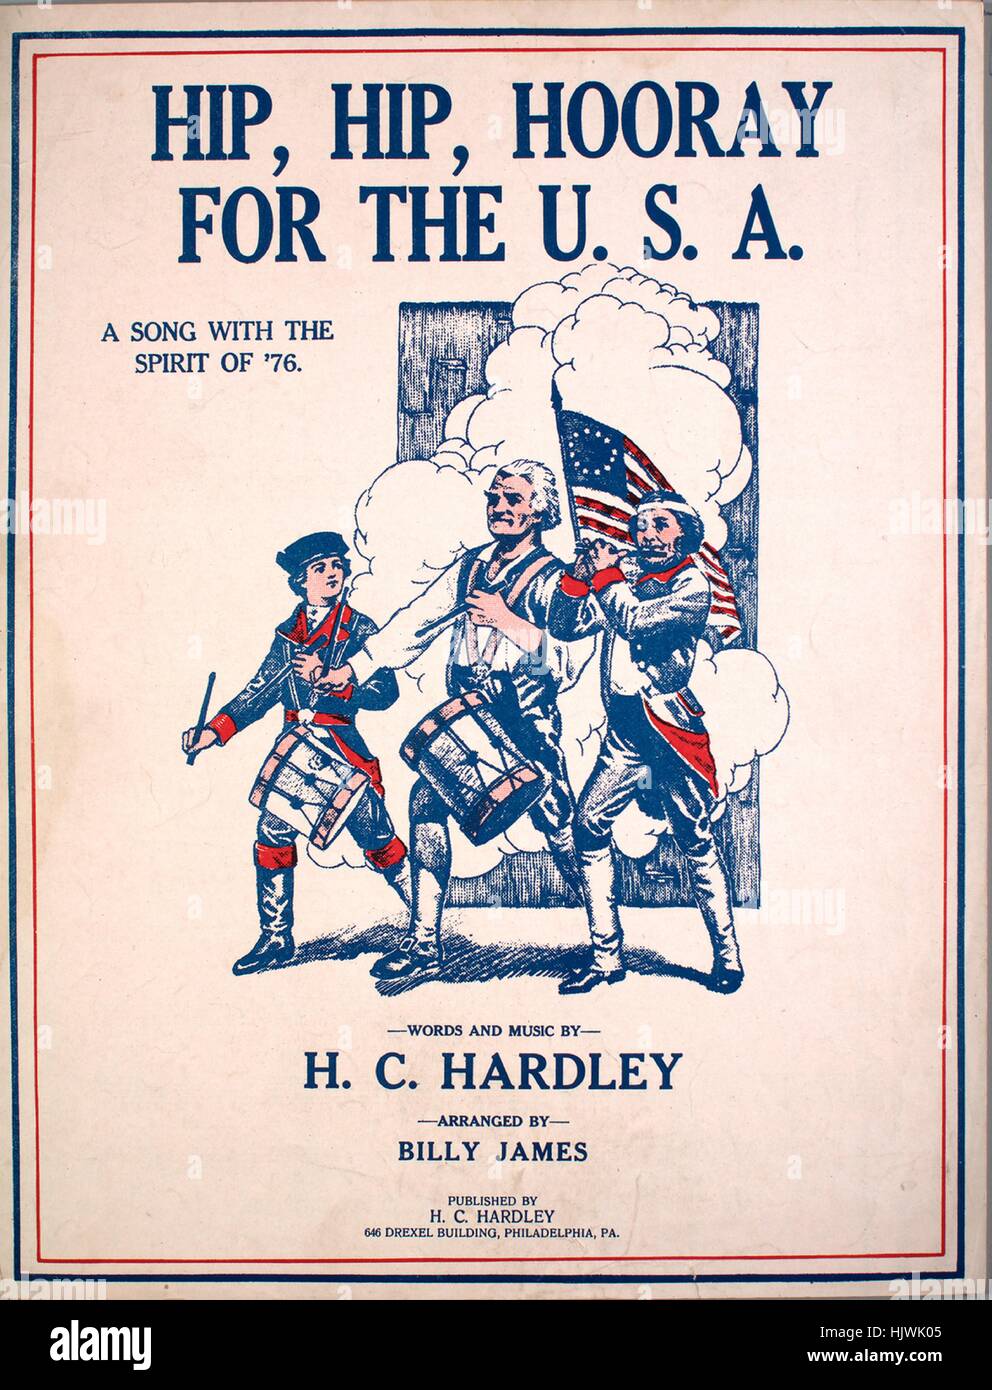 Sheet Music image de couverture de la chanson "hip, hip, hourra pour les États-Unis d'une chanson à l'esprit de '76', avec une œuvre originale 'Lecture notes Paroles et musique d'HC Hardley organisé par Billy James', United States, 1918. L'éditeur est répertorié comme "H.C. Hardley, Drexel 646 Building', la forme de la composition est "avec chœur trophique', l'instrumentation est 'piano et voix", la première ligne se lit comme suit : "Ils l'appellent pour l'Oncle Sam, son nom court droit du U.S.A.', et l'illustration artiste est répertorié comme 'Aucun'. Banque D'Images